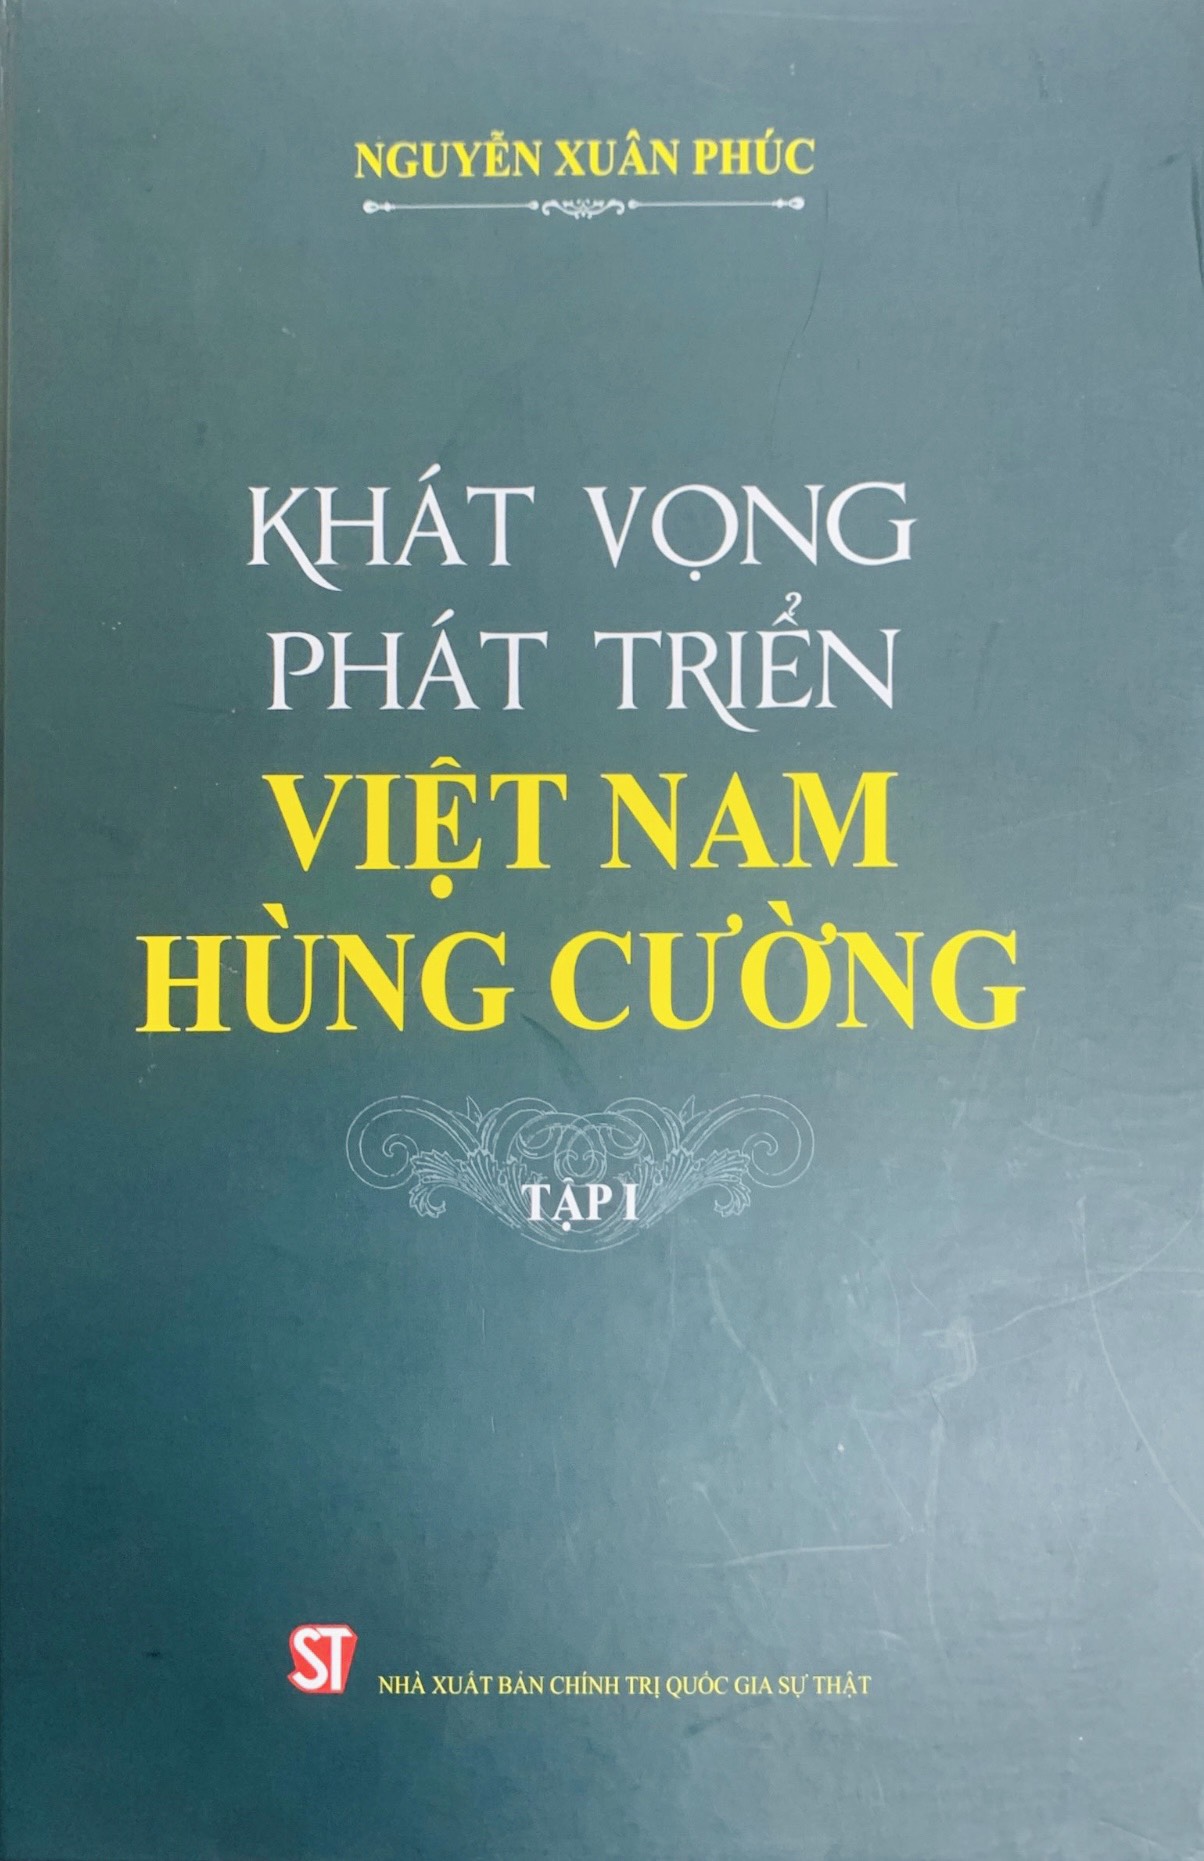 Khát vọng phát triển Việt Nam hùng cường